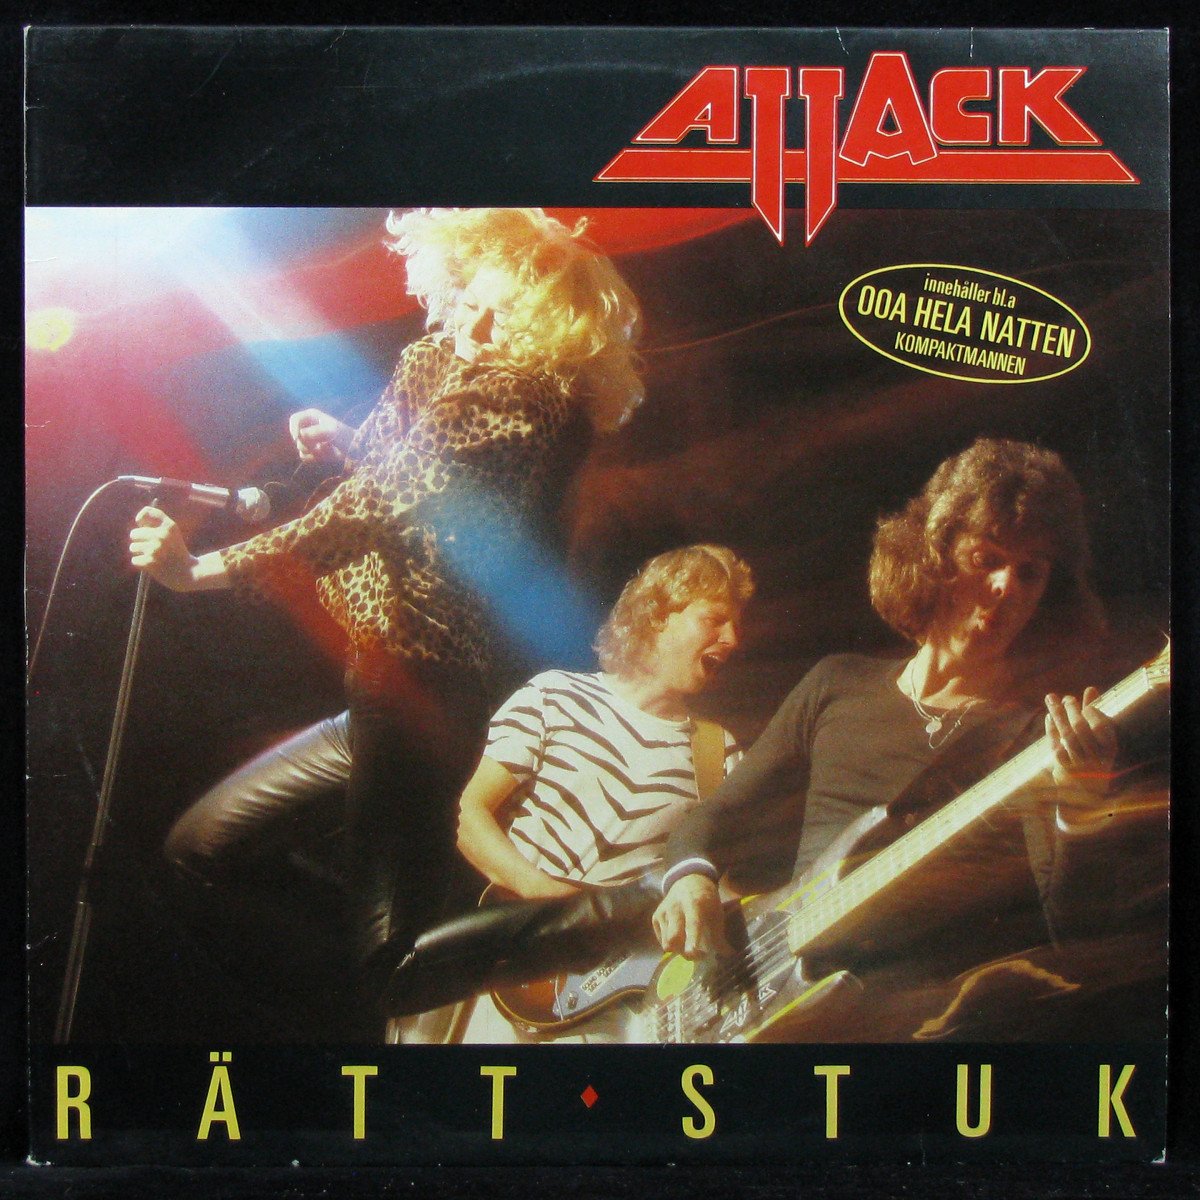 LP Attack — Ratt Stuk фото